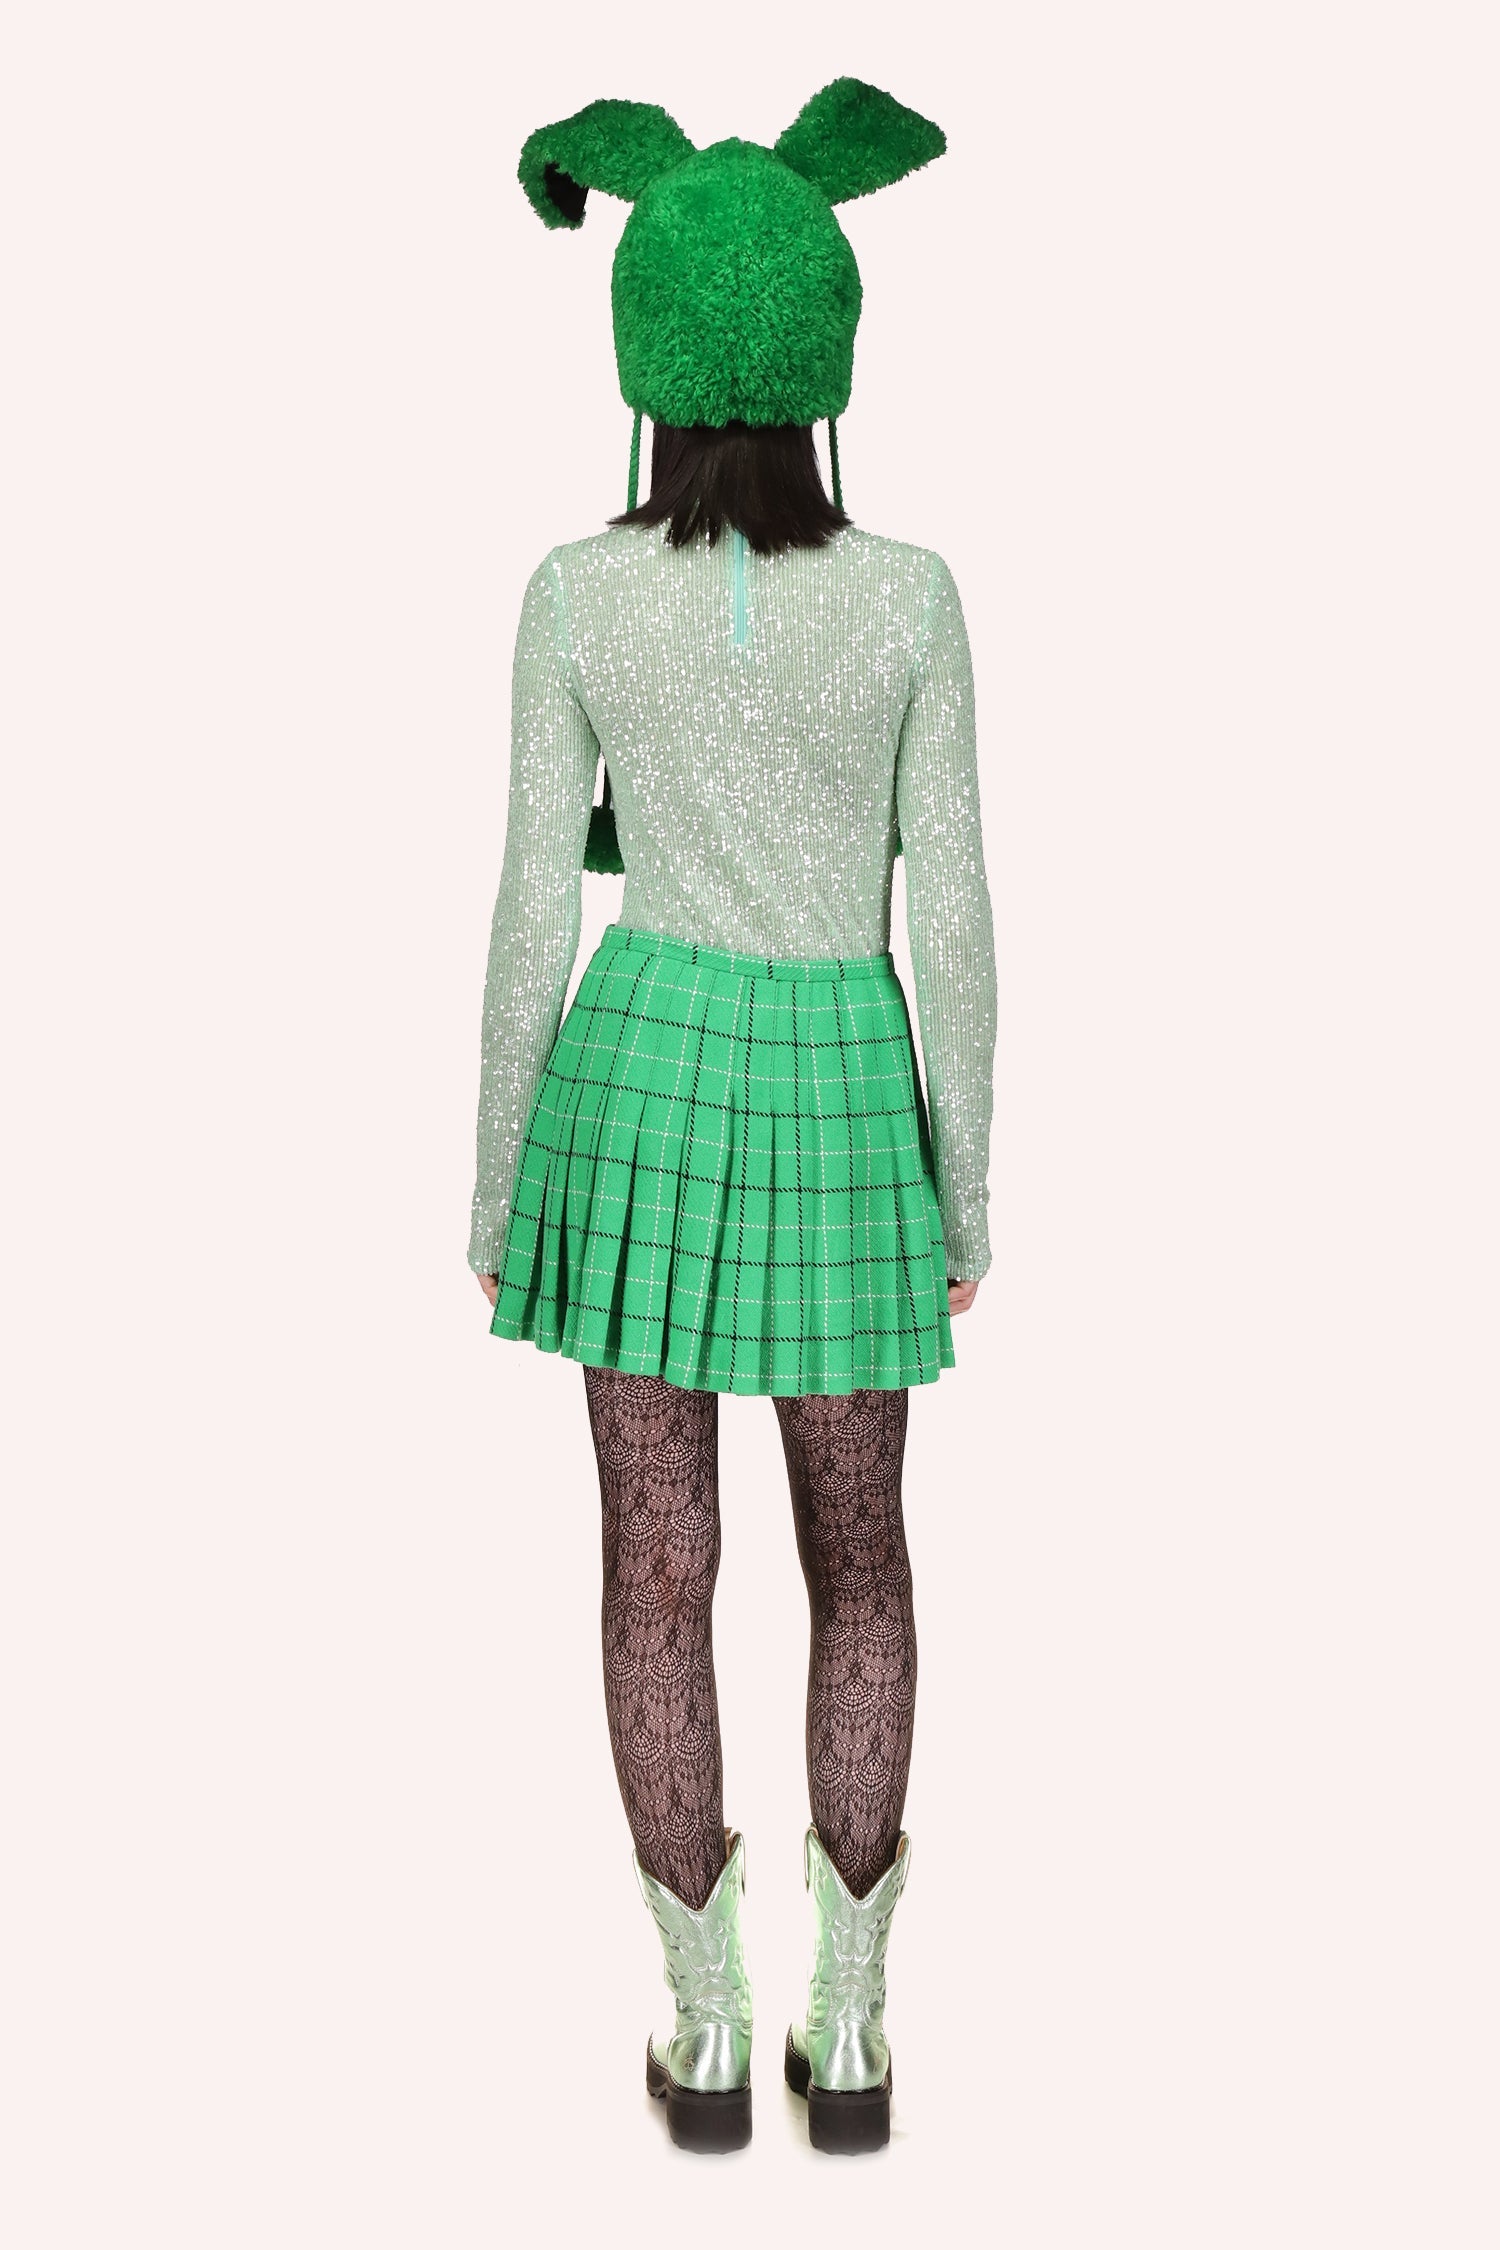 Falda plisada Clover, minifalda, con estampado de bordes verde oscuro y blanco en forma cuadrada